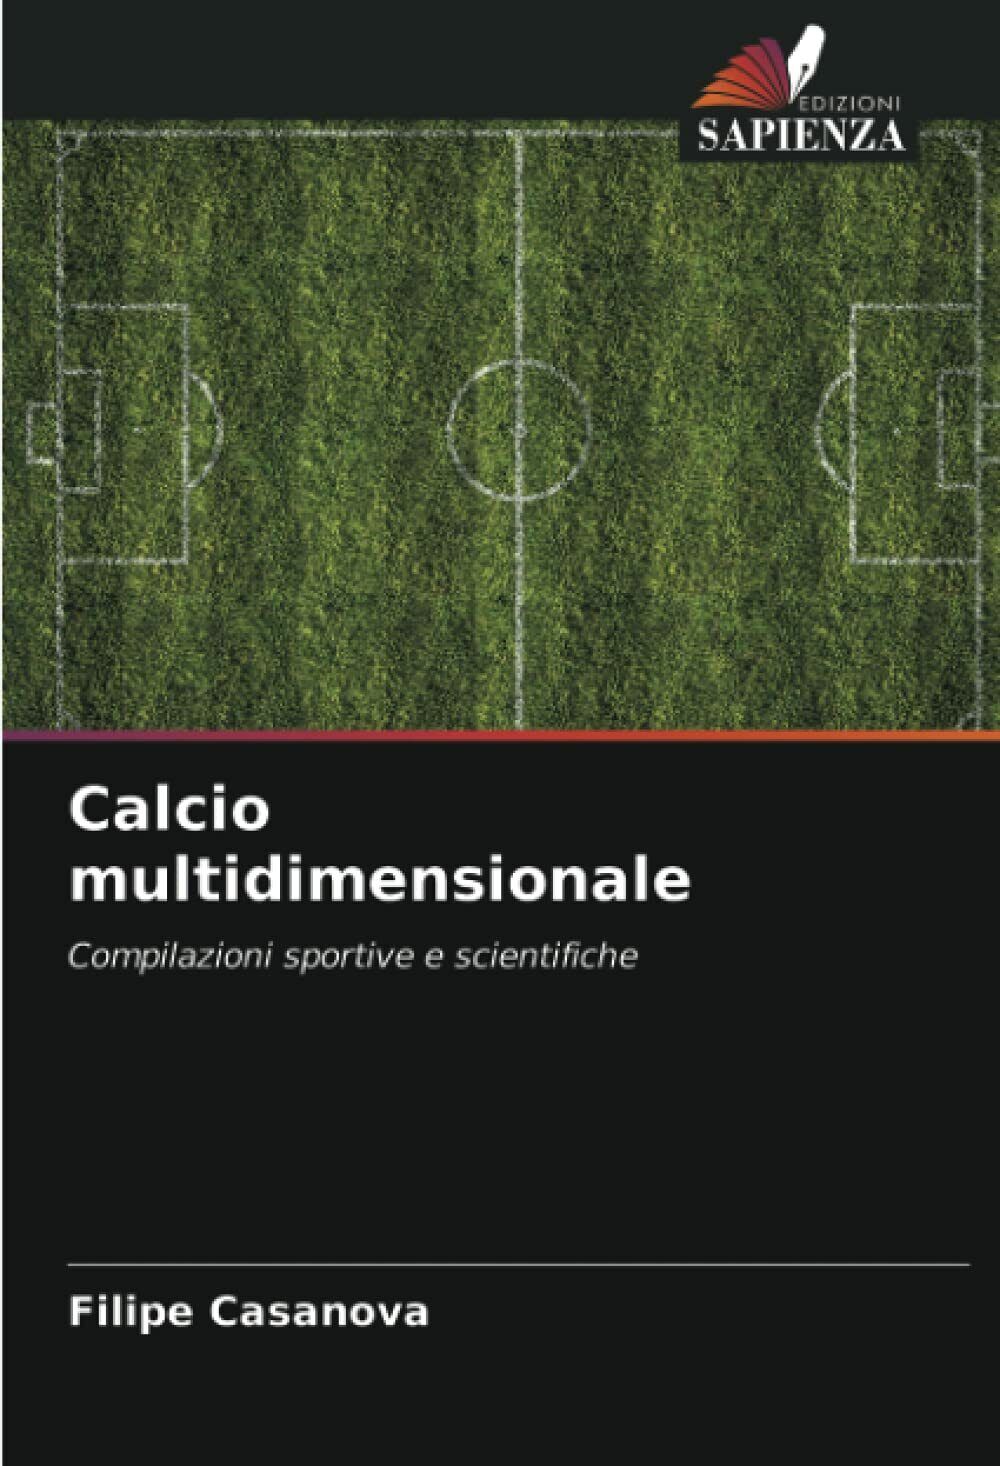 Calcio multidimensionale - Filipe Casanova - Edizioni Sapienza, 2021